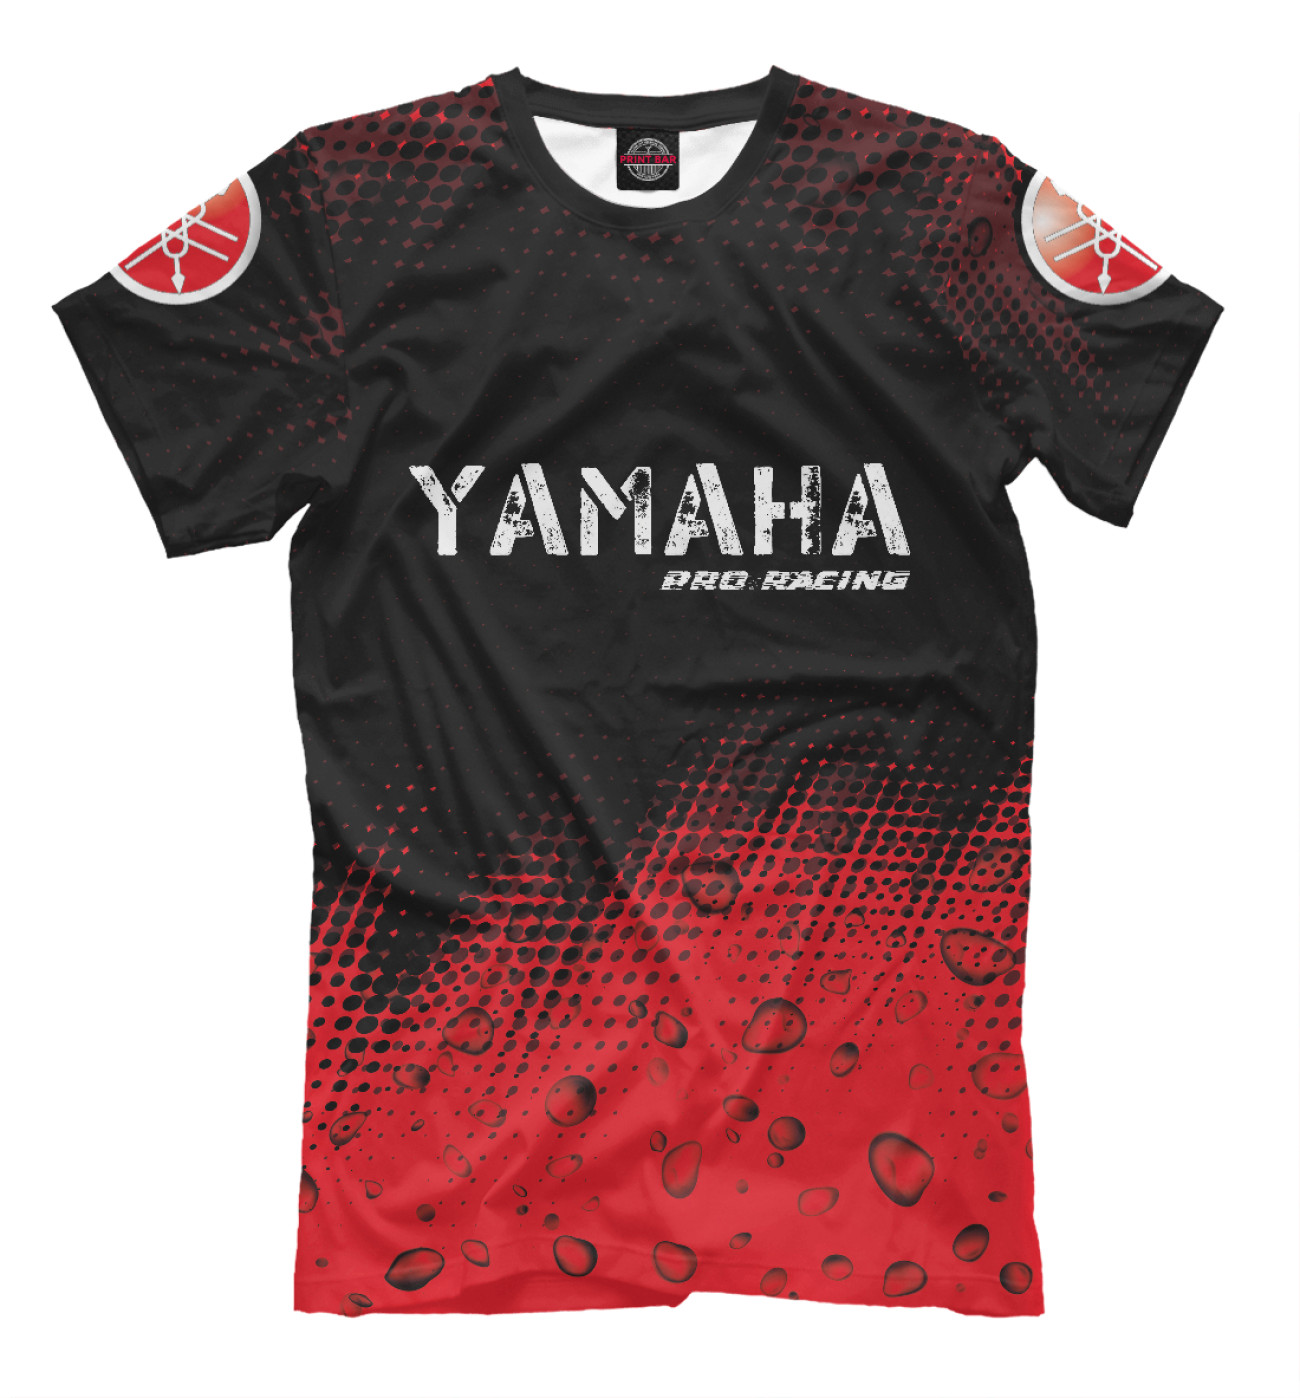 Мужская Футболка Yamaha | Yamaha Pro Racing, артикул: YAM-487030-fut-2